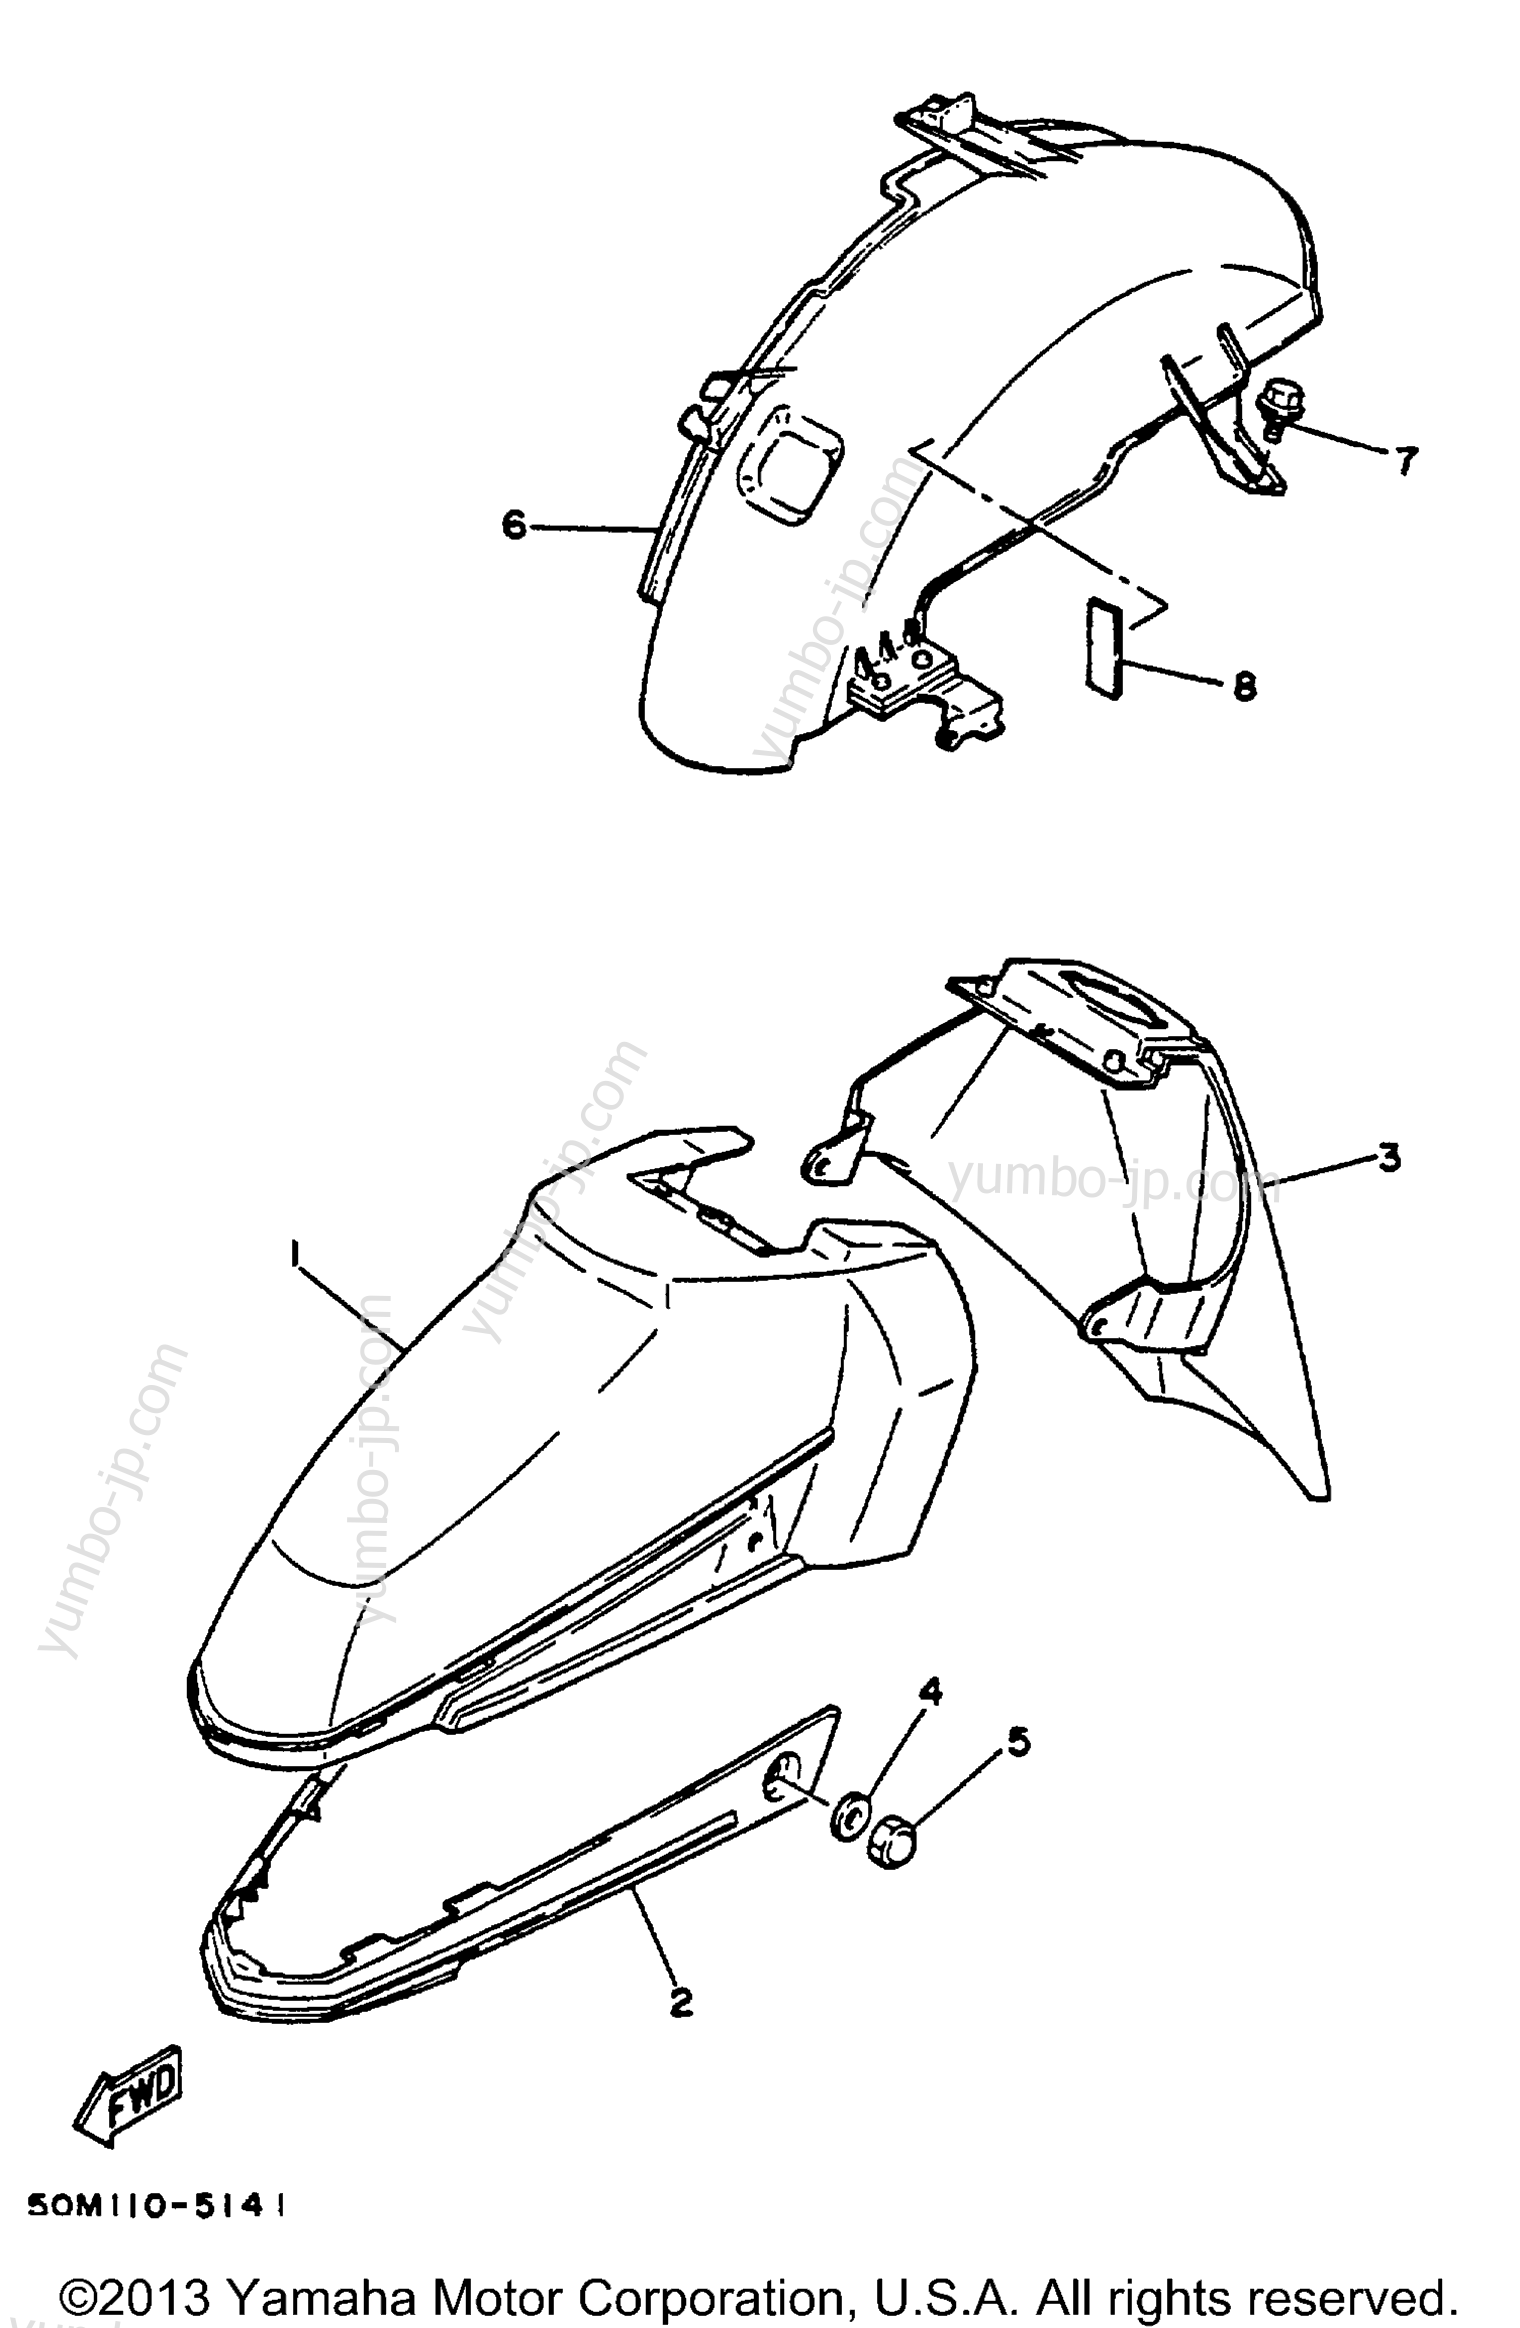 FENDER для скутеров YAMAHA RIVA 125 (XC125M) 2000 г.